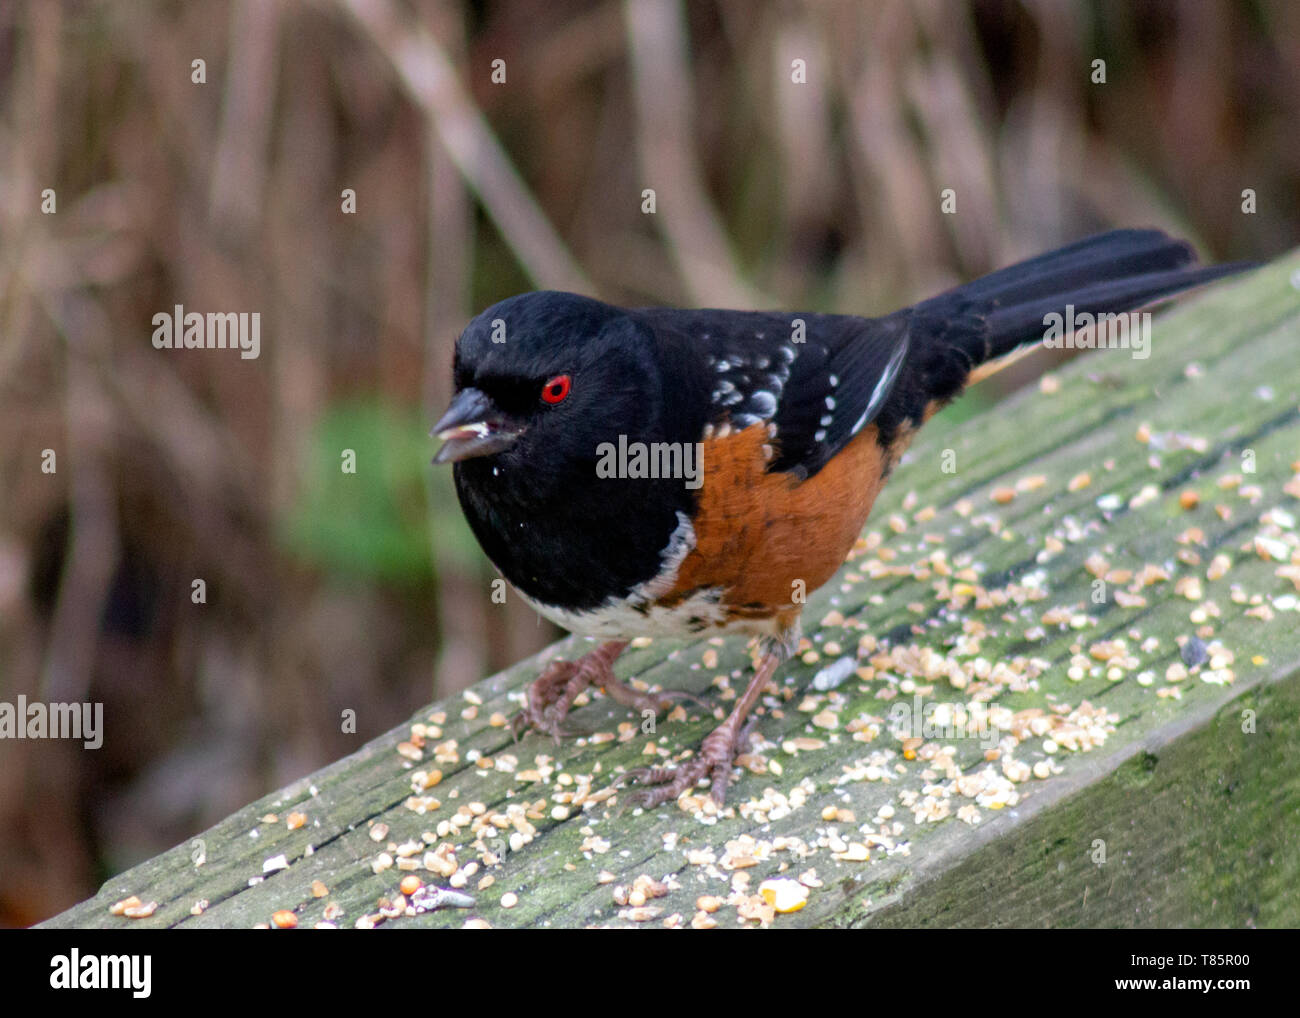 Beau Tohi tacheté en oiseaux, en Colombie-Britannique. En attente de quelques graines en hiver. Noir, repéré les plumes, l'orange vif et les yeux rouges du ventre. Banque D'Images